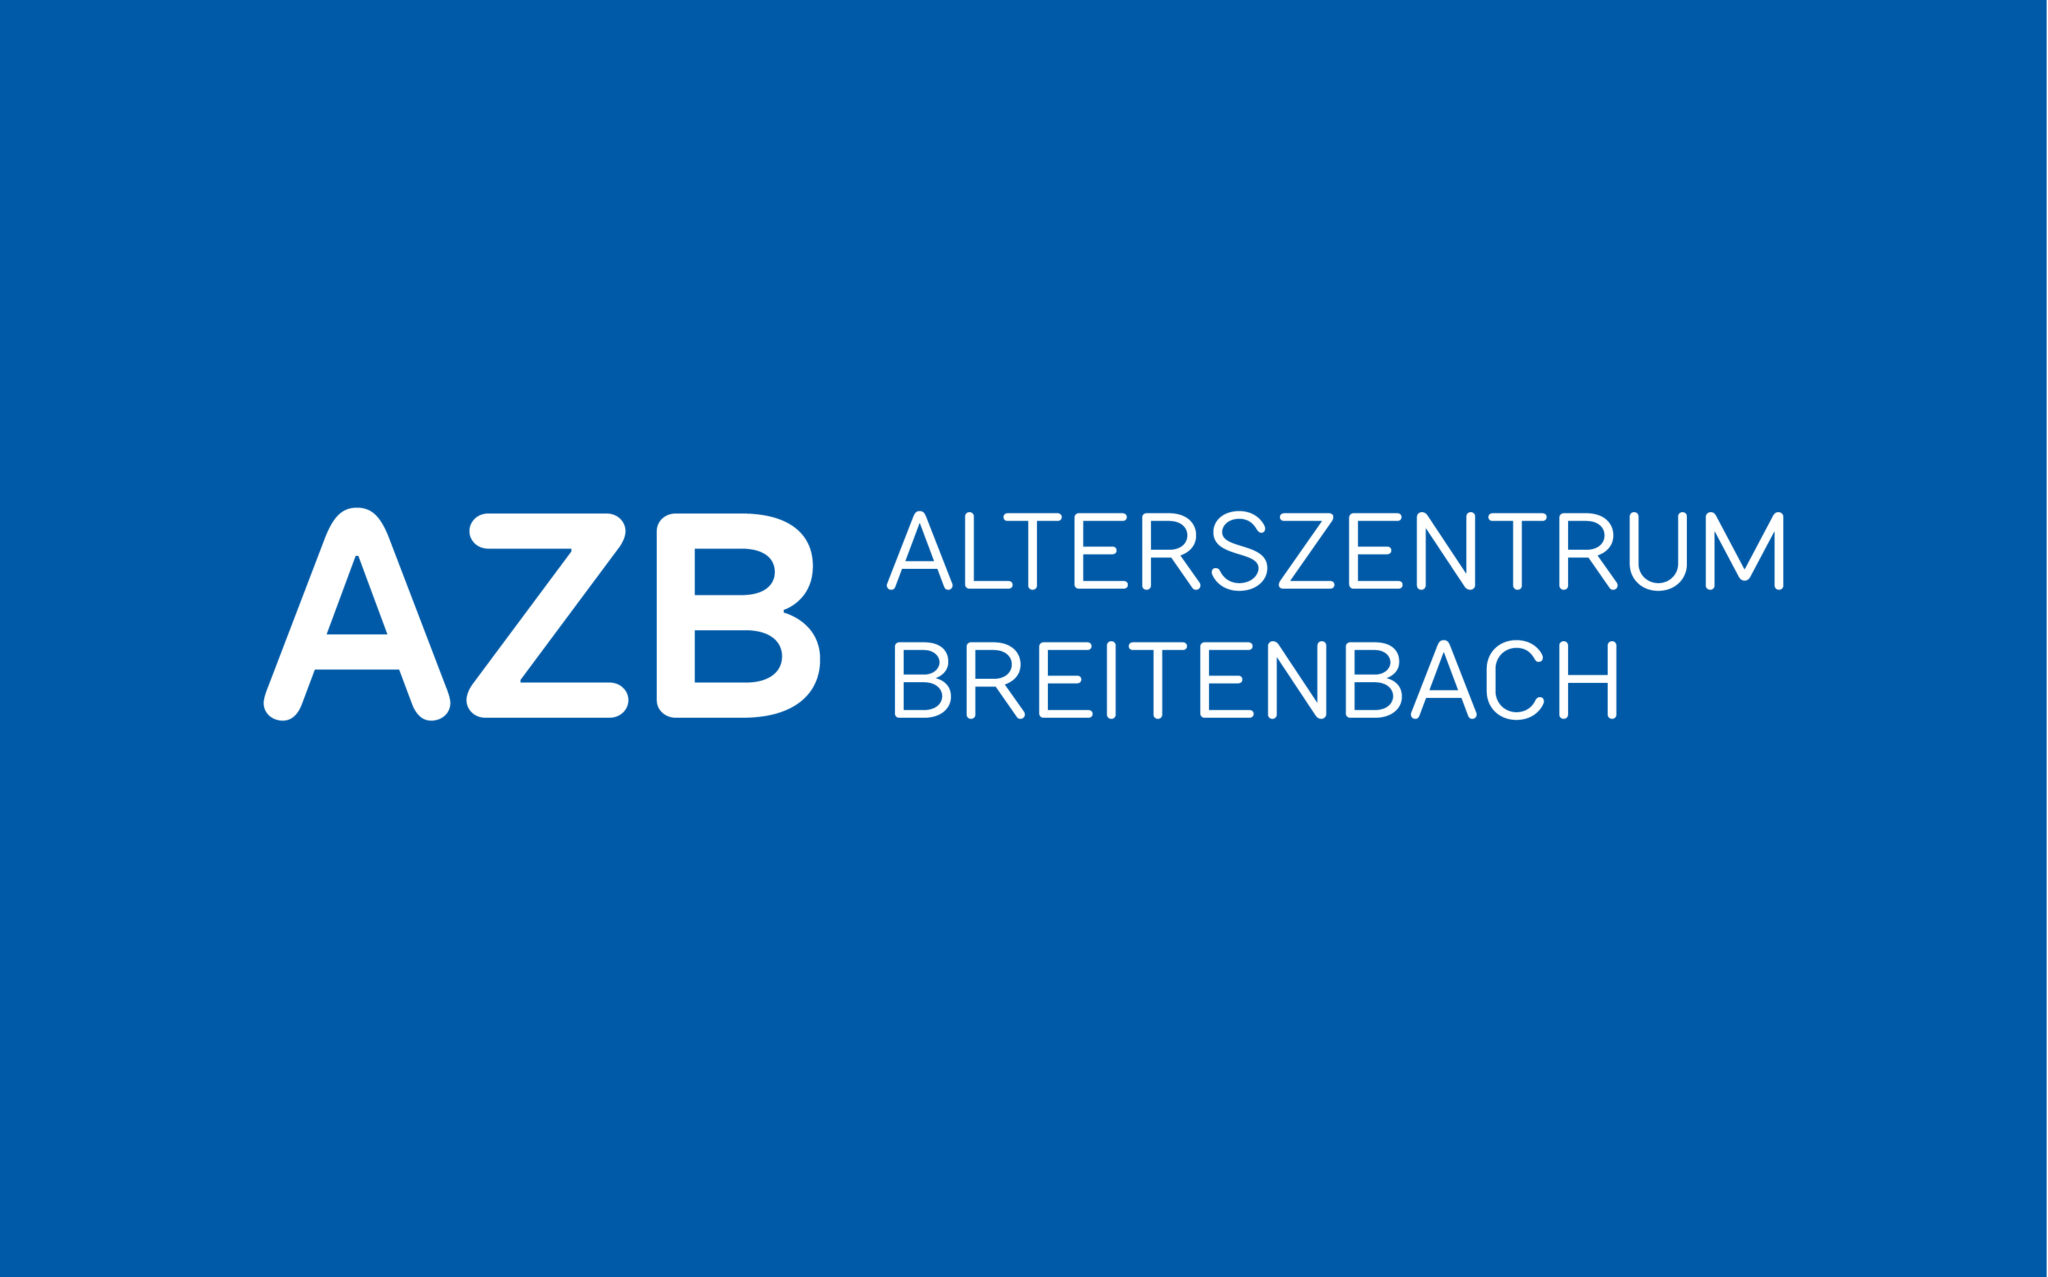 Branding, Corporate Design und Konzept für die Firma Alterszentrum Breitenbach. Logo-Gestaltung auf blauem Hintergrund.